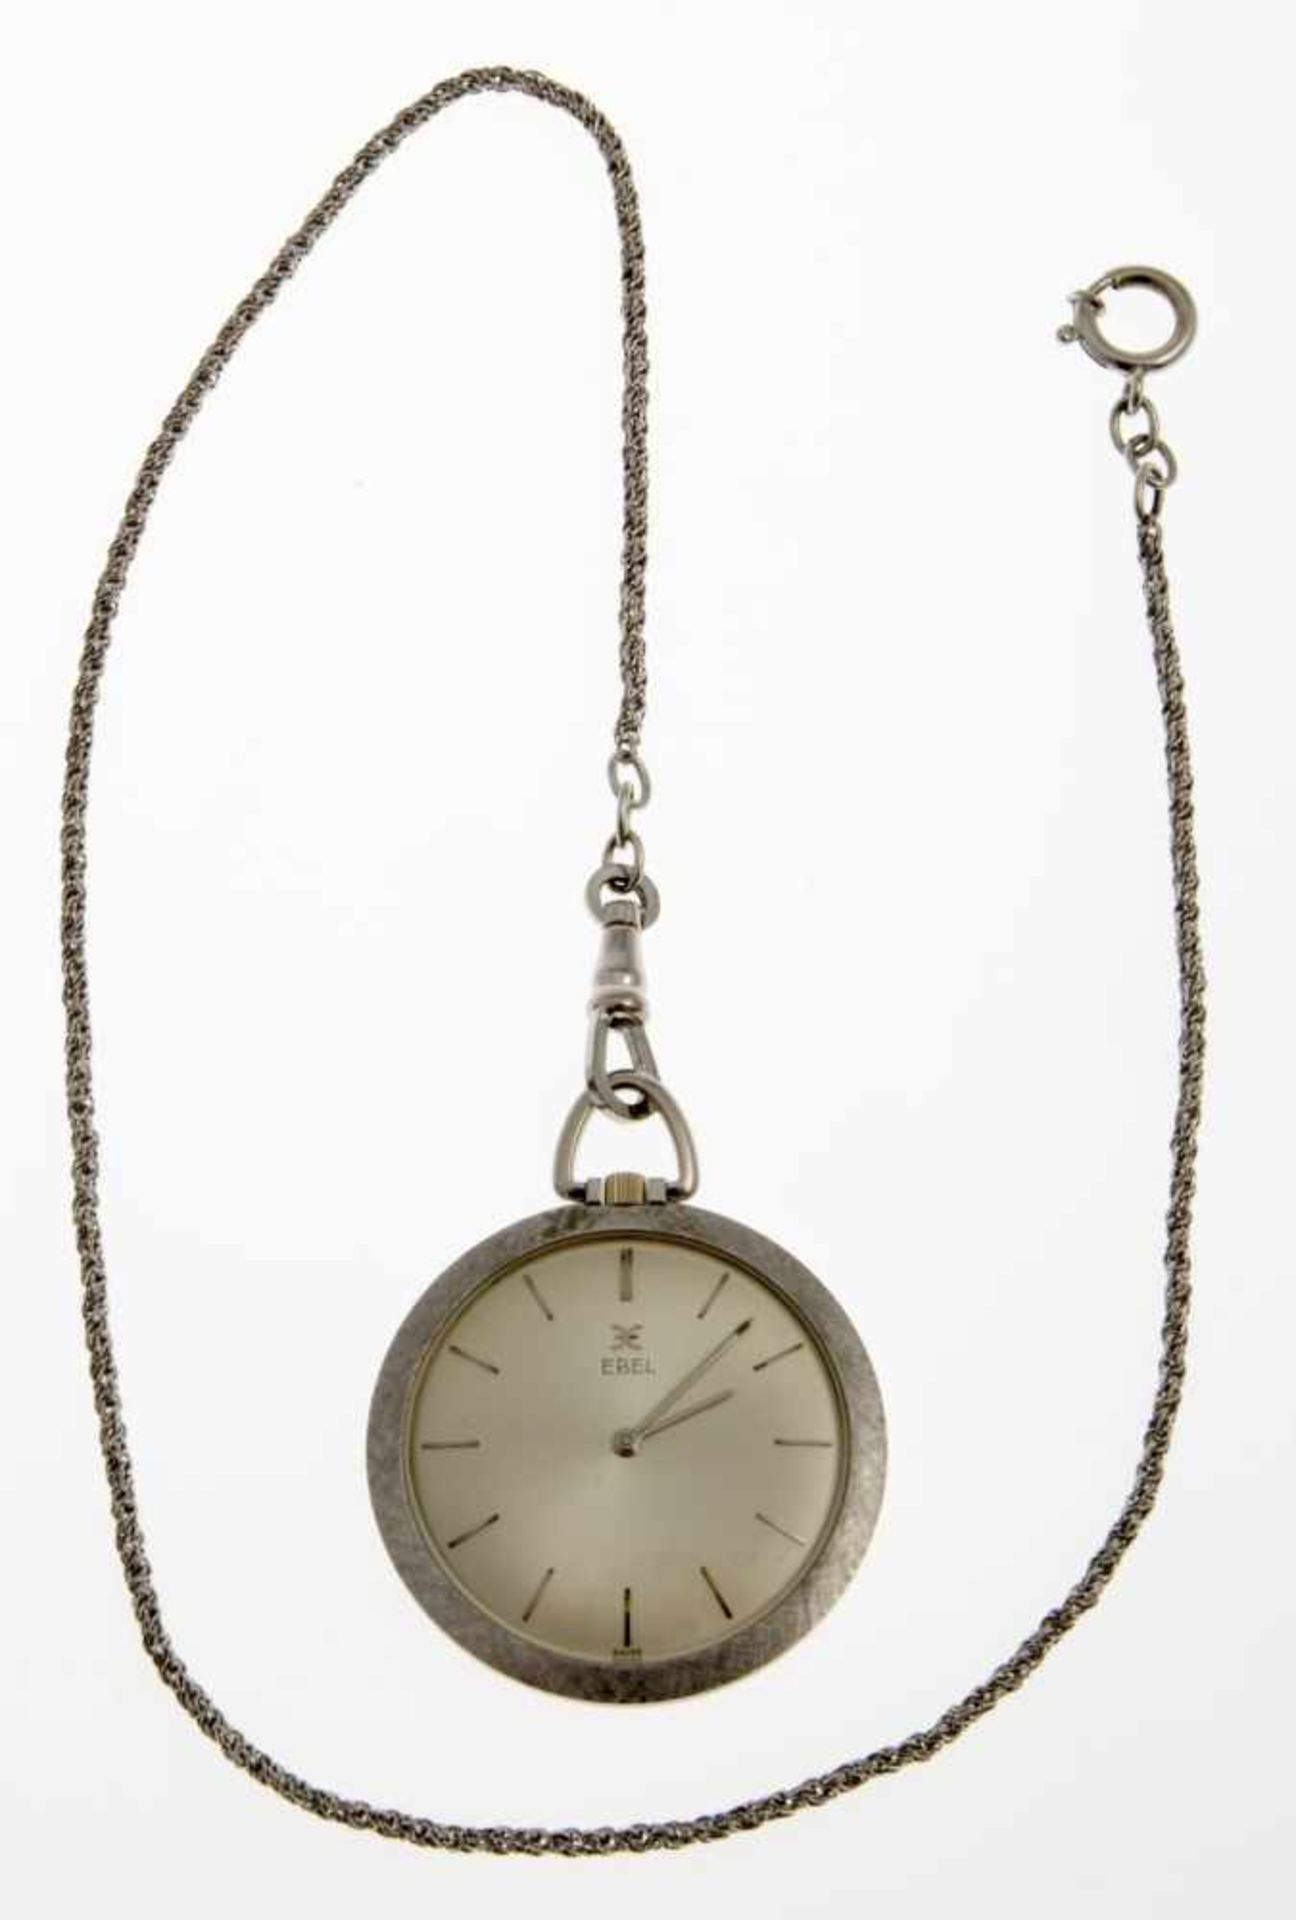 Elegante Ebel-Frackuhr an UhrenketteWeißgold 750, gebürstet. Versilbertes Zifferblatt mit - Bild 2 aus 2